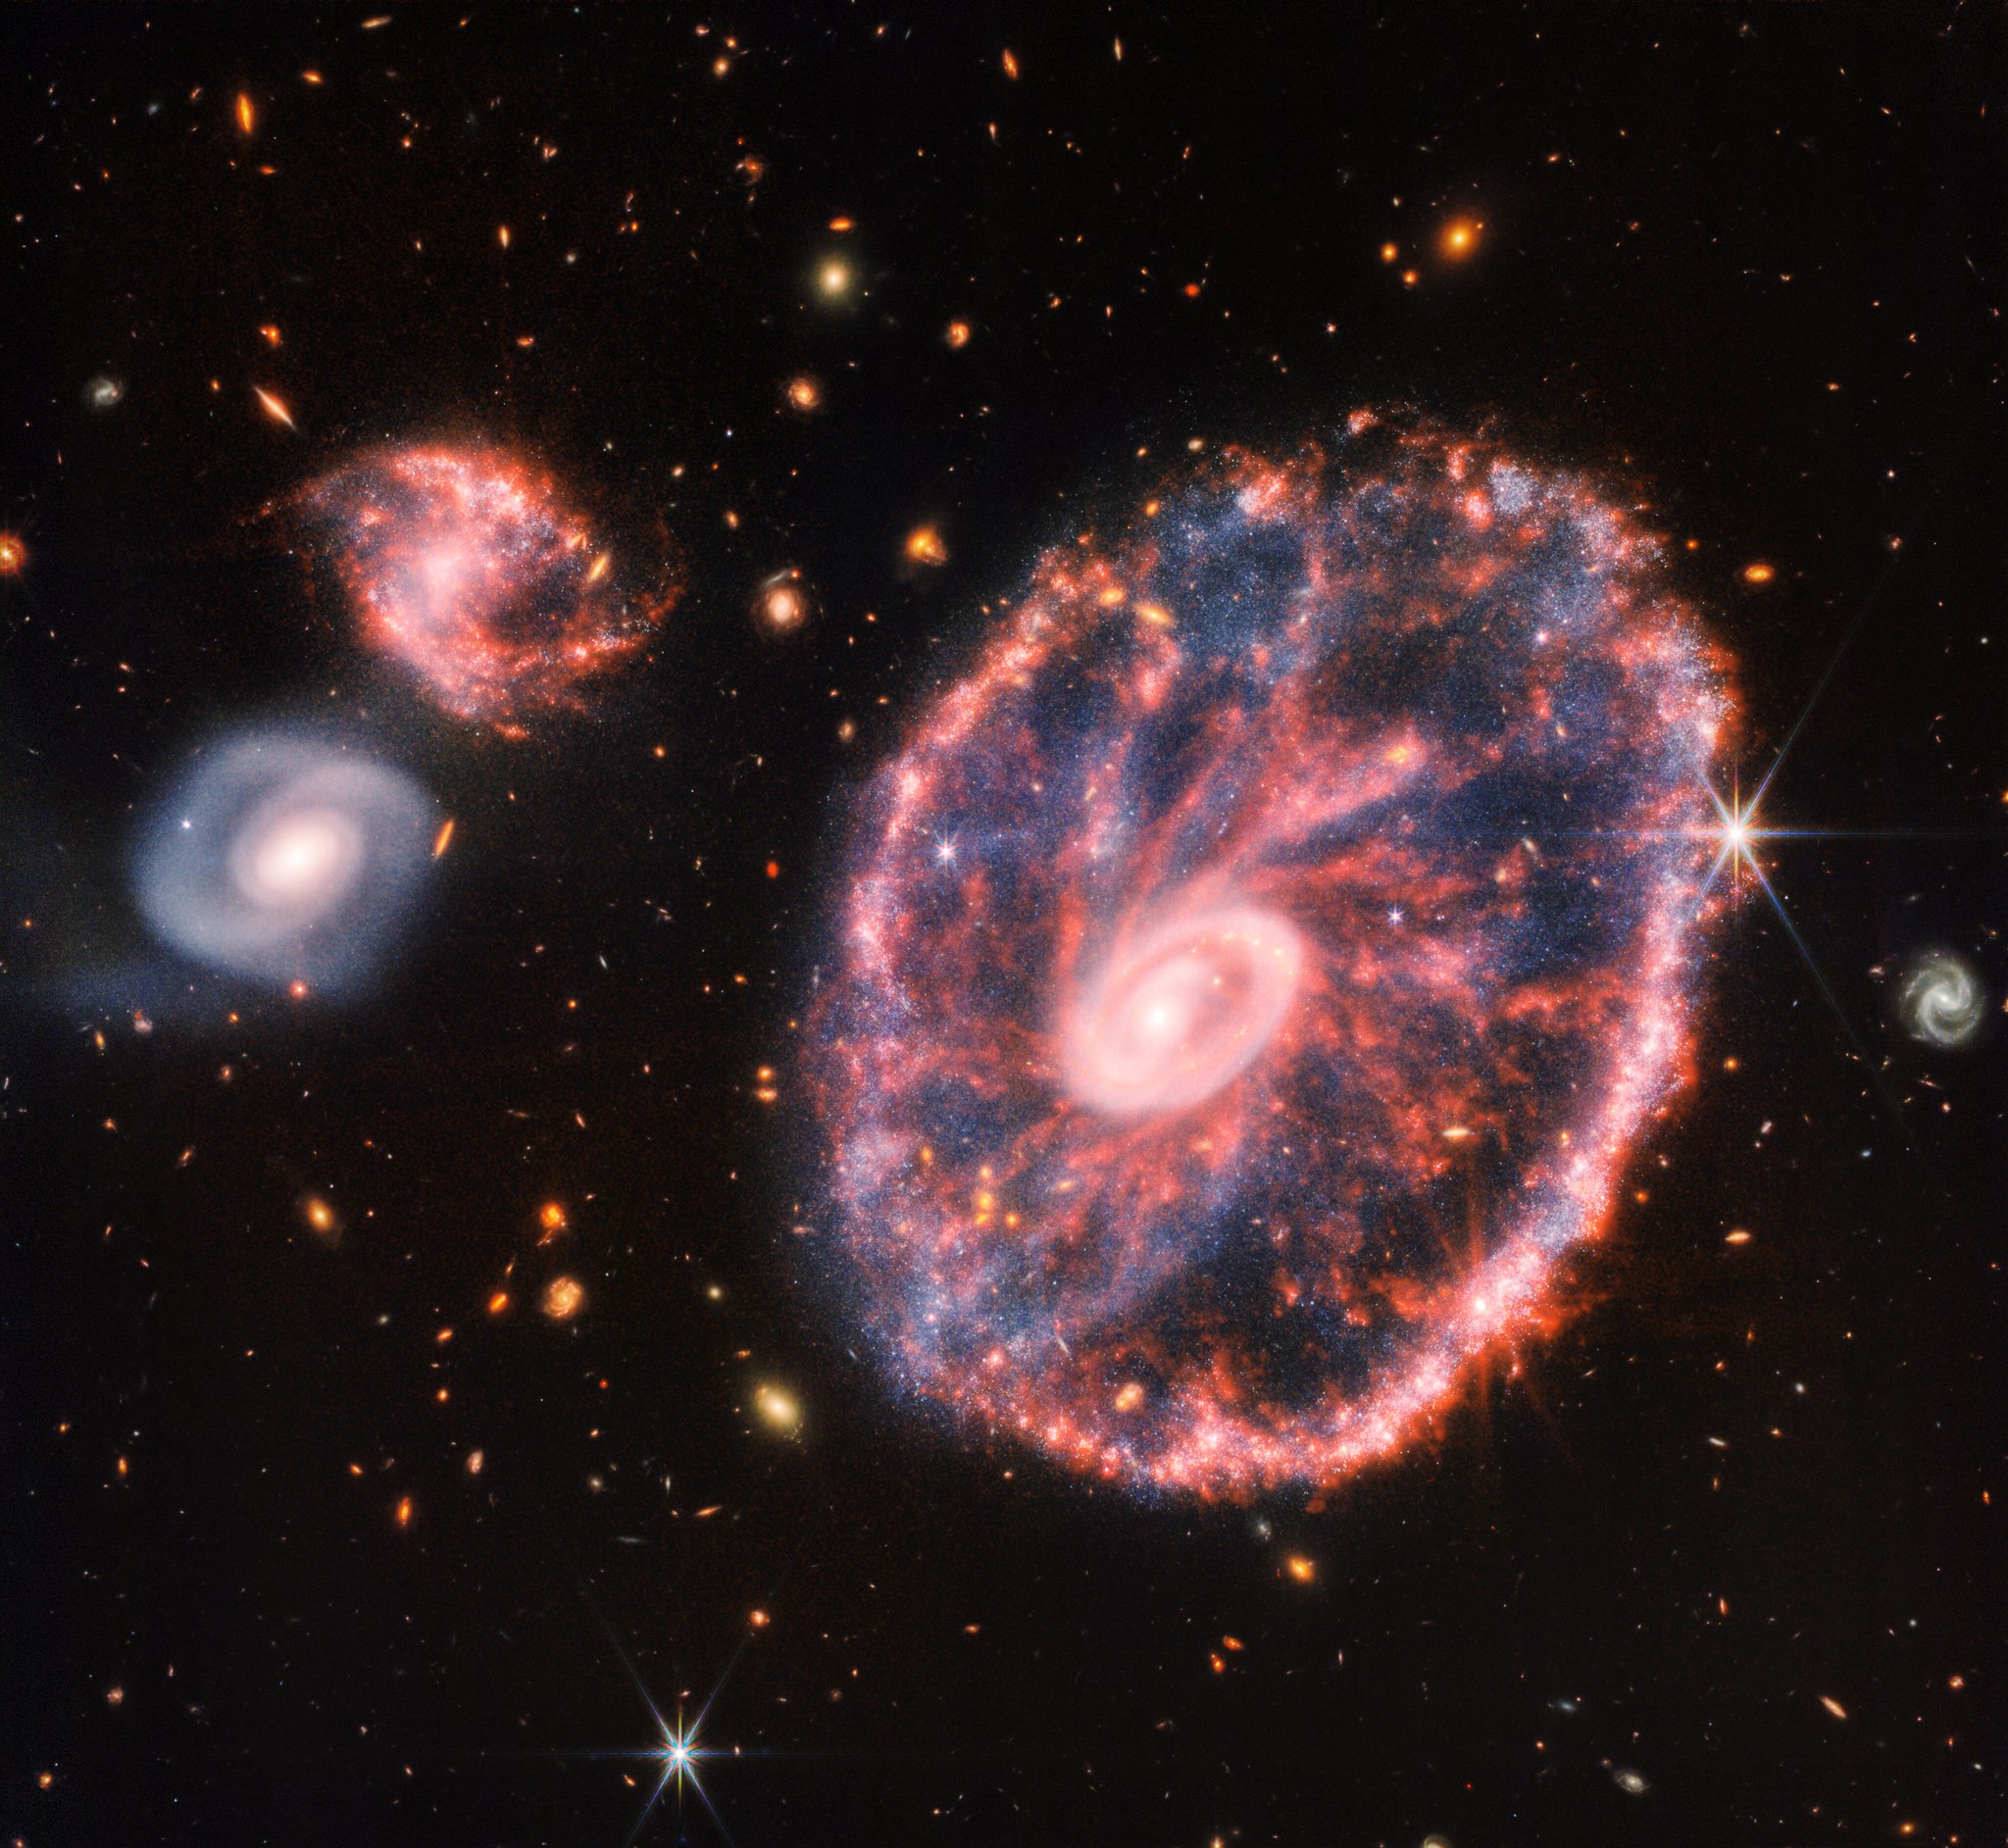 Складене зображення галактики Колесо Воза, отримане приладами JWST NIRCam та MIRI. Величезна космічна структура зараз перебуває в перехідному стані після зіткнення з іншою галактикою приблизно 400 мільйонів років тому. Зображення:  NASA, ESA, CSA, STScI, CC BY 2.0